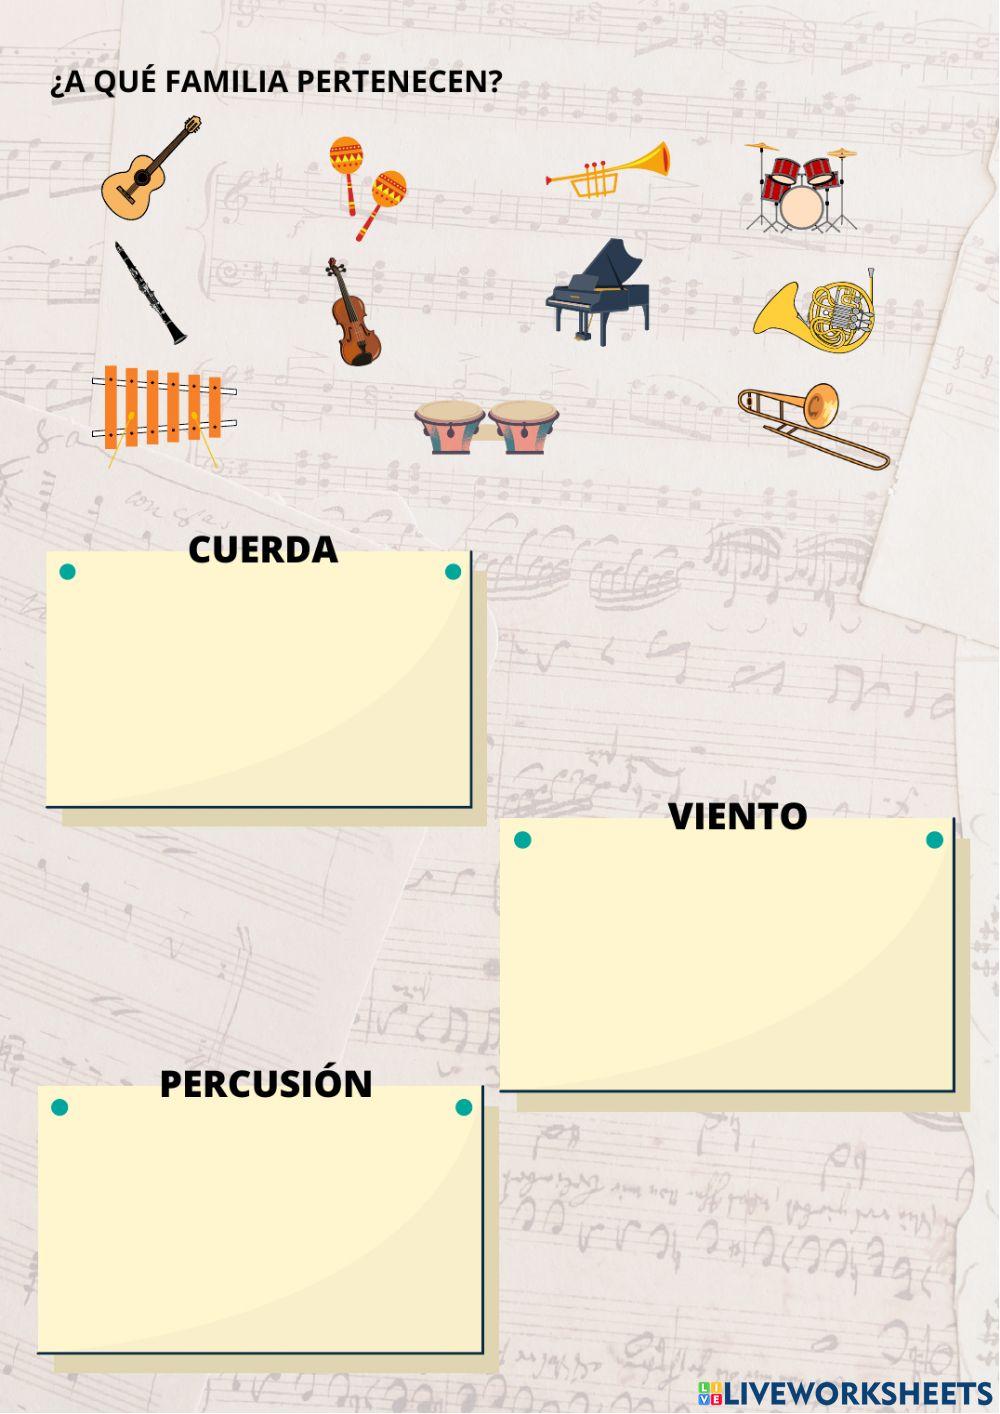 Música: notas e instrumentos